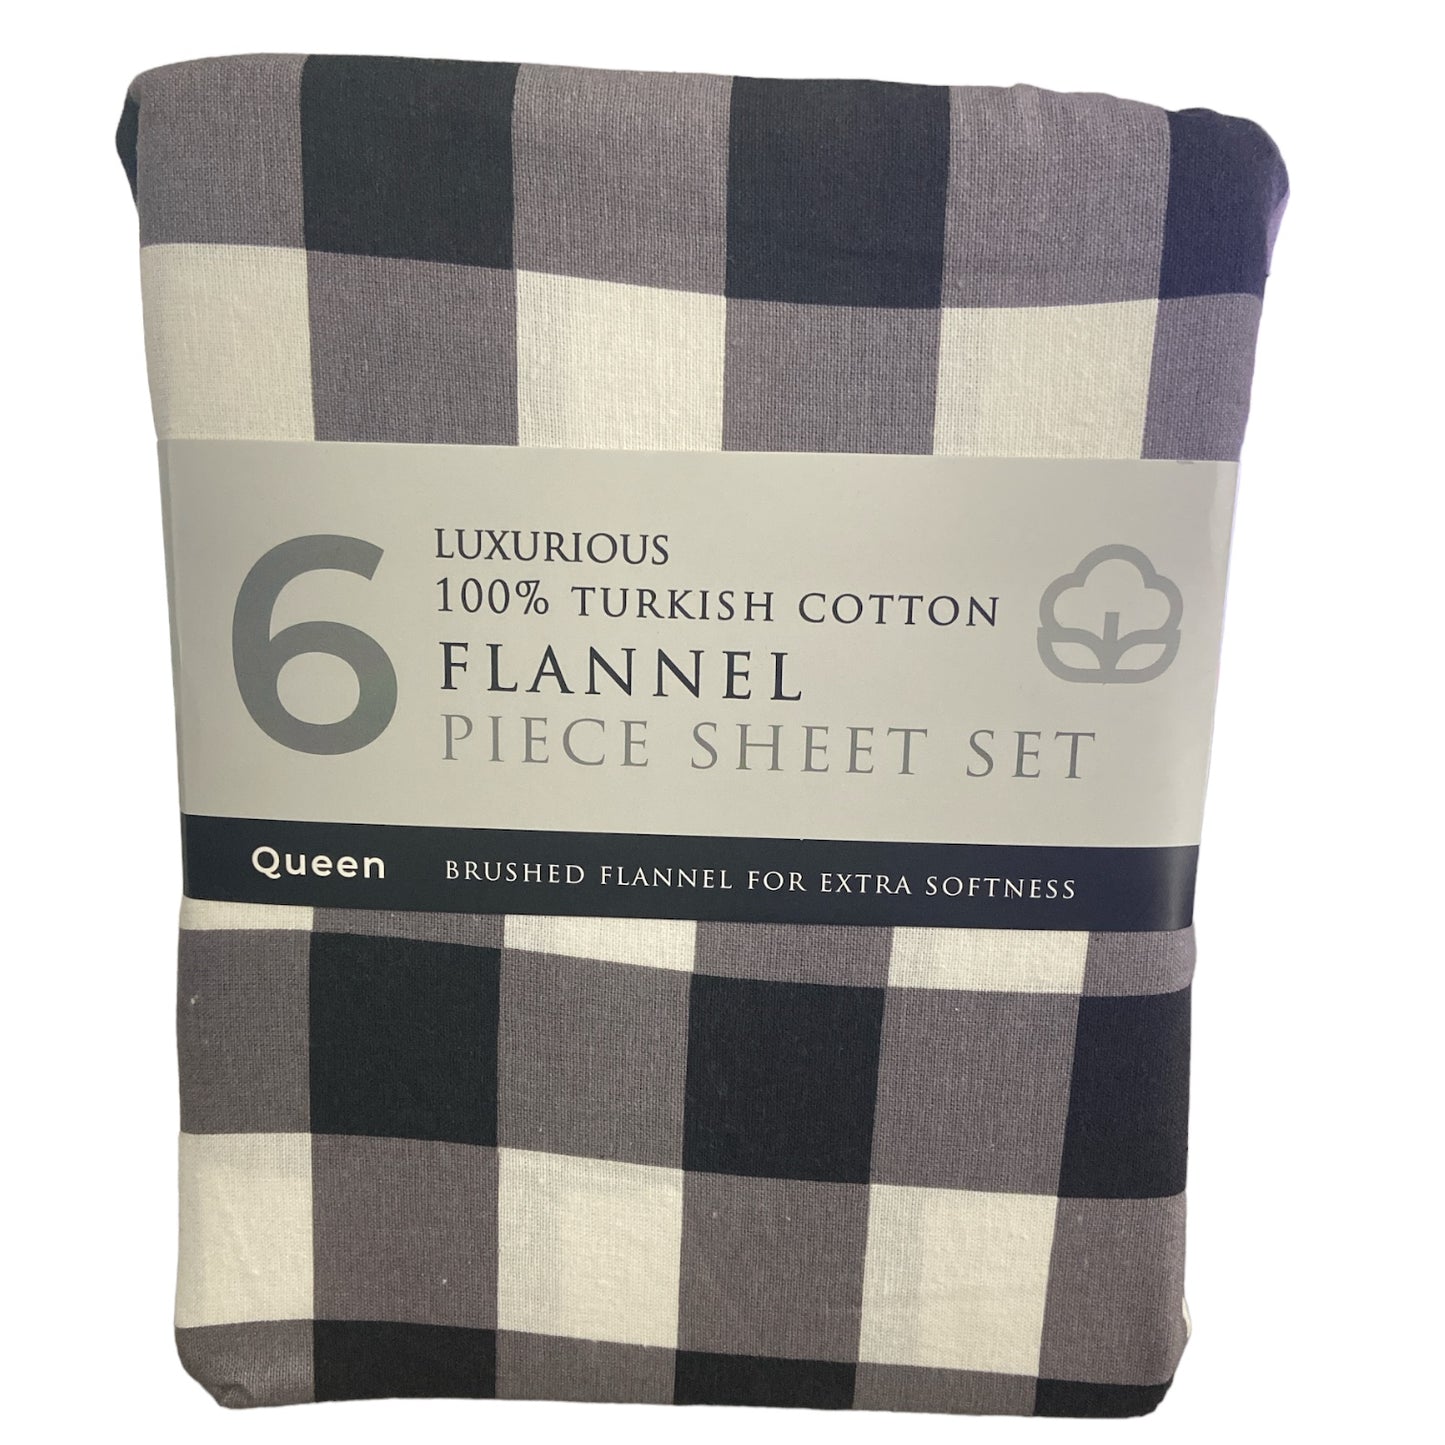 Luxurious Turkish Cotton 6 Piece Flannel Sheet Set, Black/White Plaid, Queen